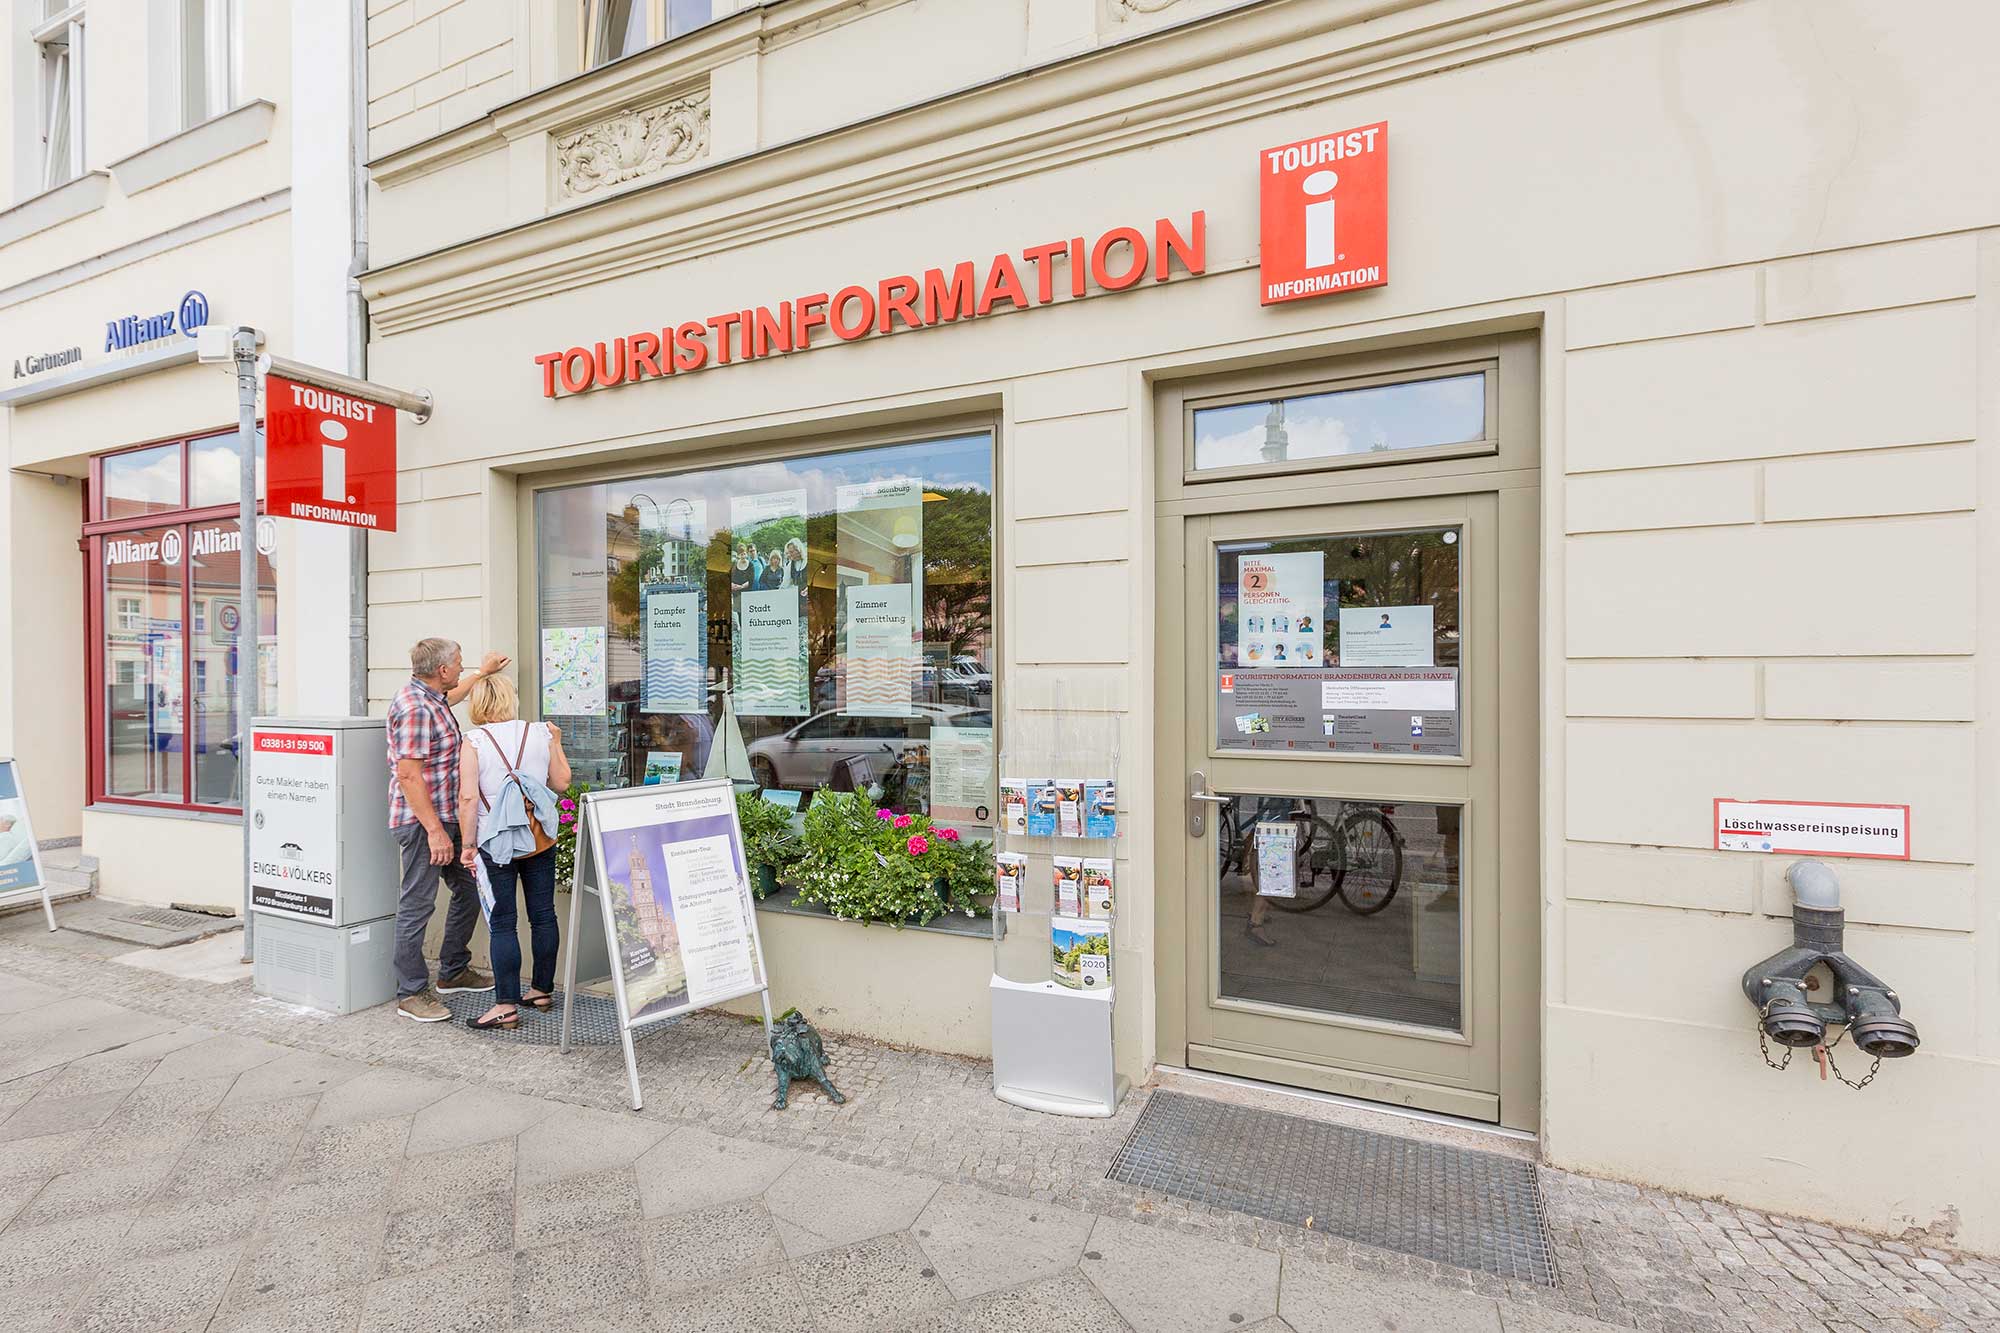 [Translate to English:] STG - Stadtmarketing- & Tourismusgesellschaft in der Sankt Annen Galerie Brandenburg